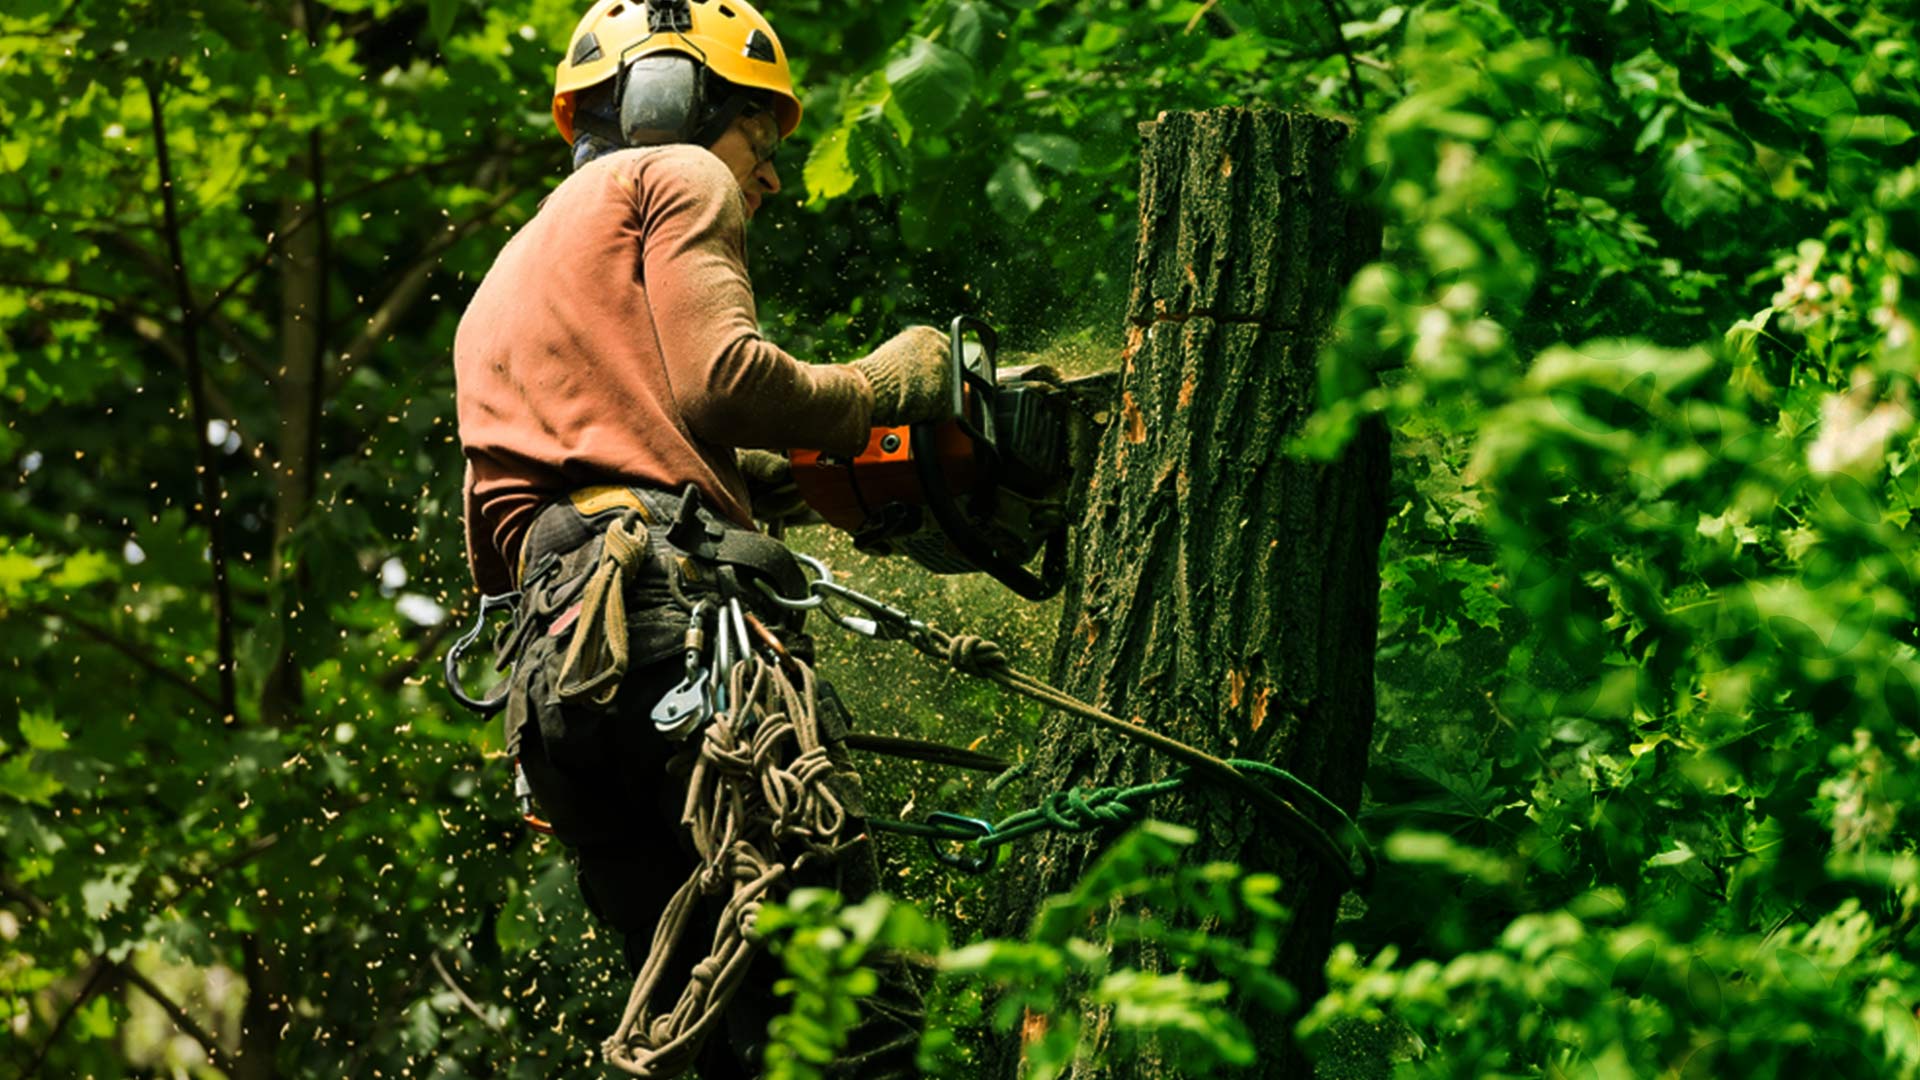 hero tree removal near hartland wi